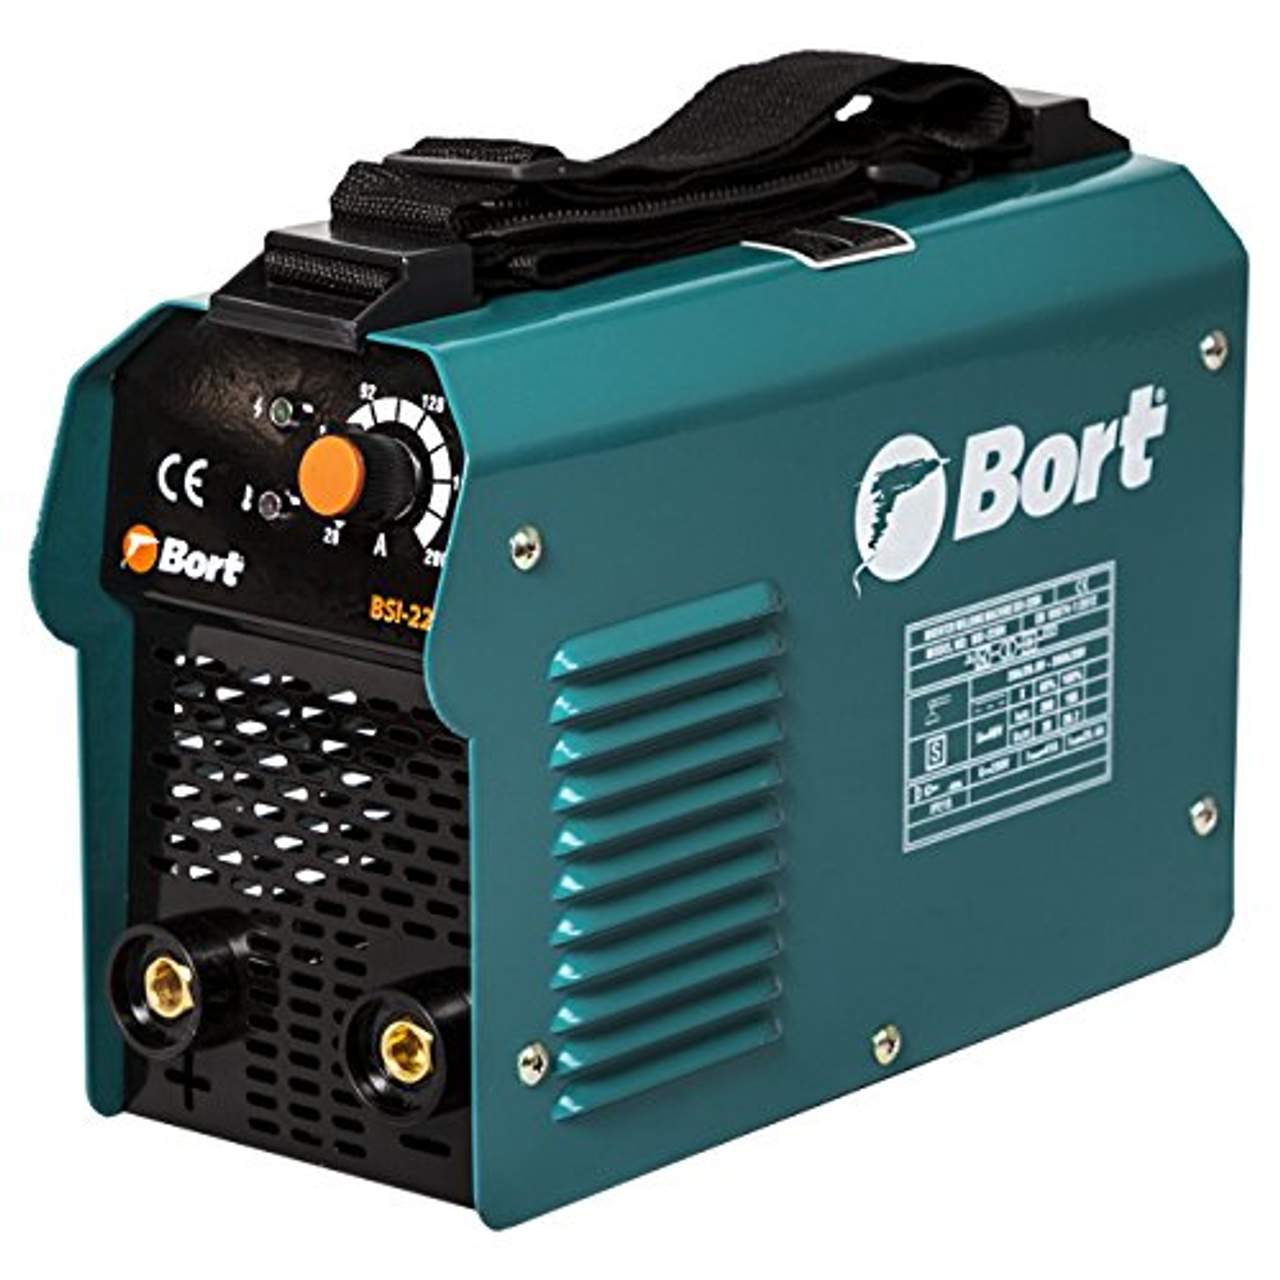 Bort Elektro-Schweißgerät BSI-220H mit Hot-Start